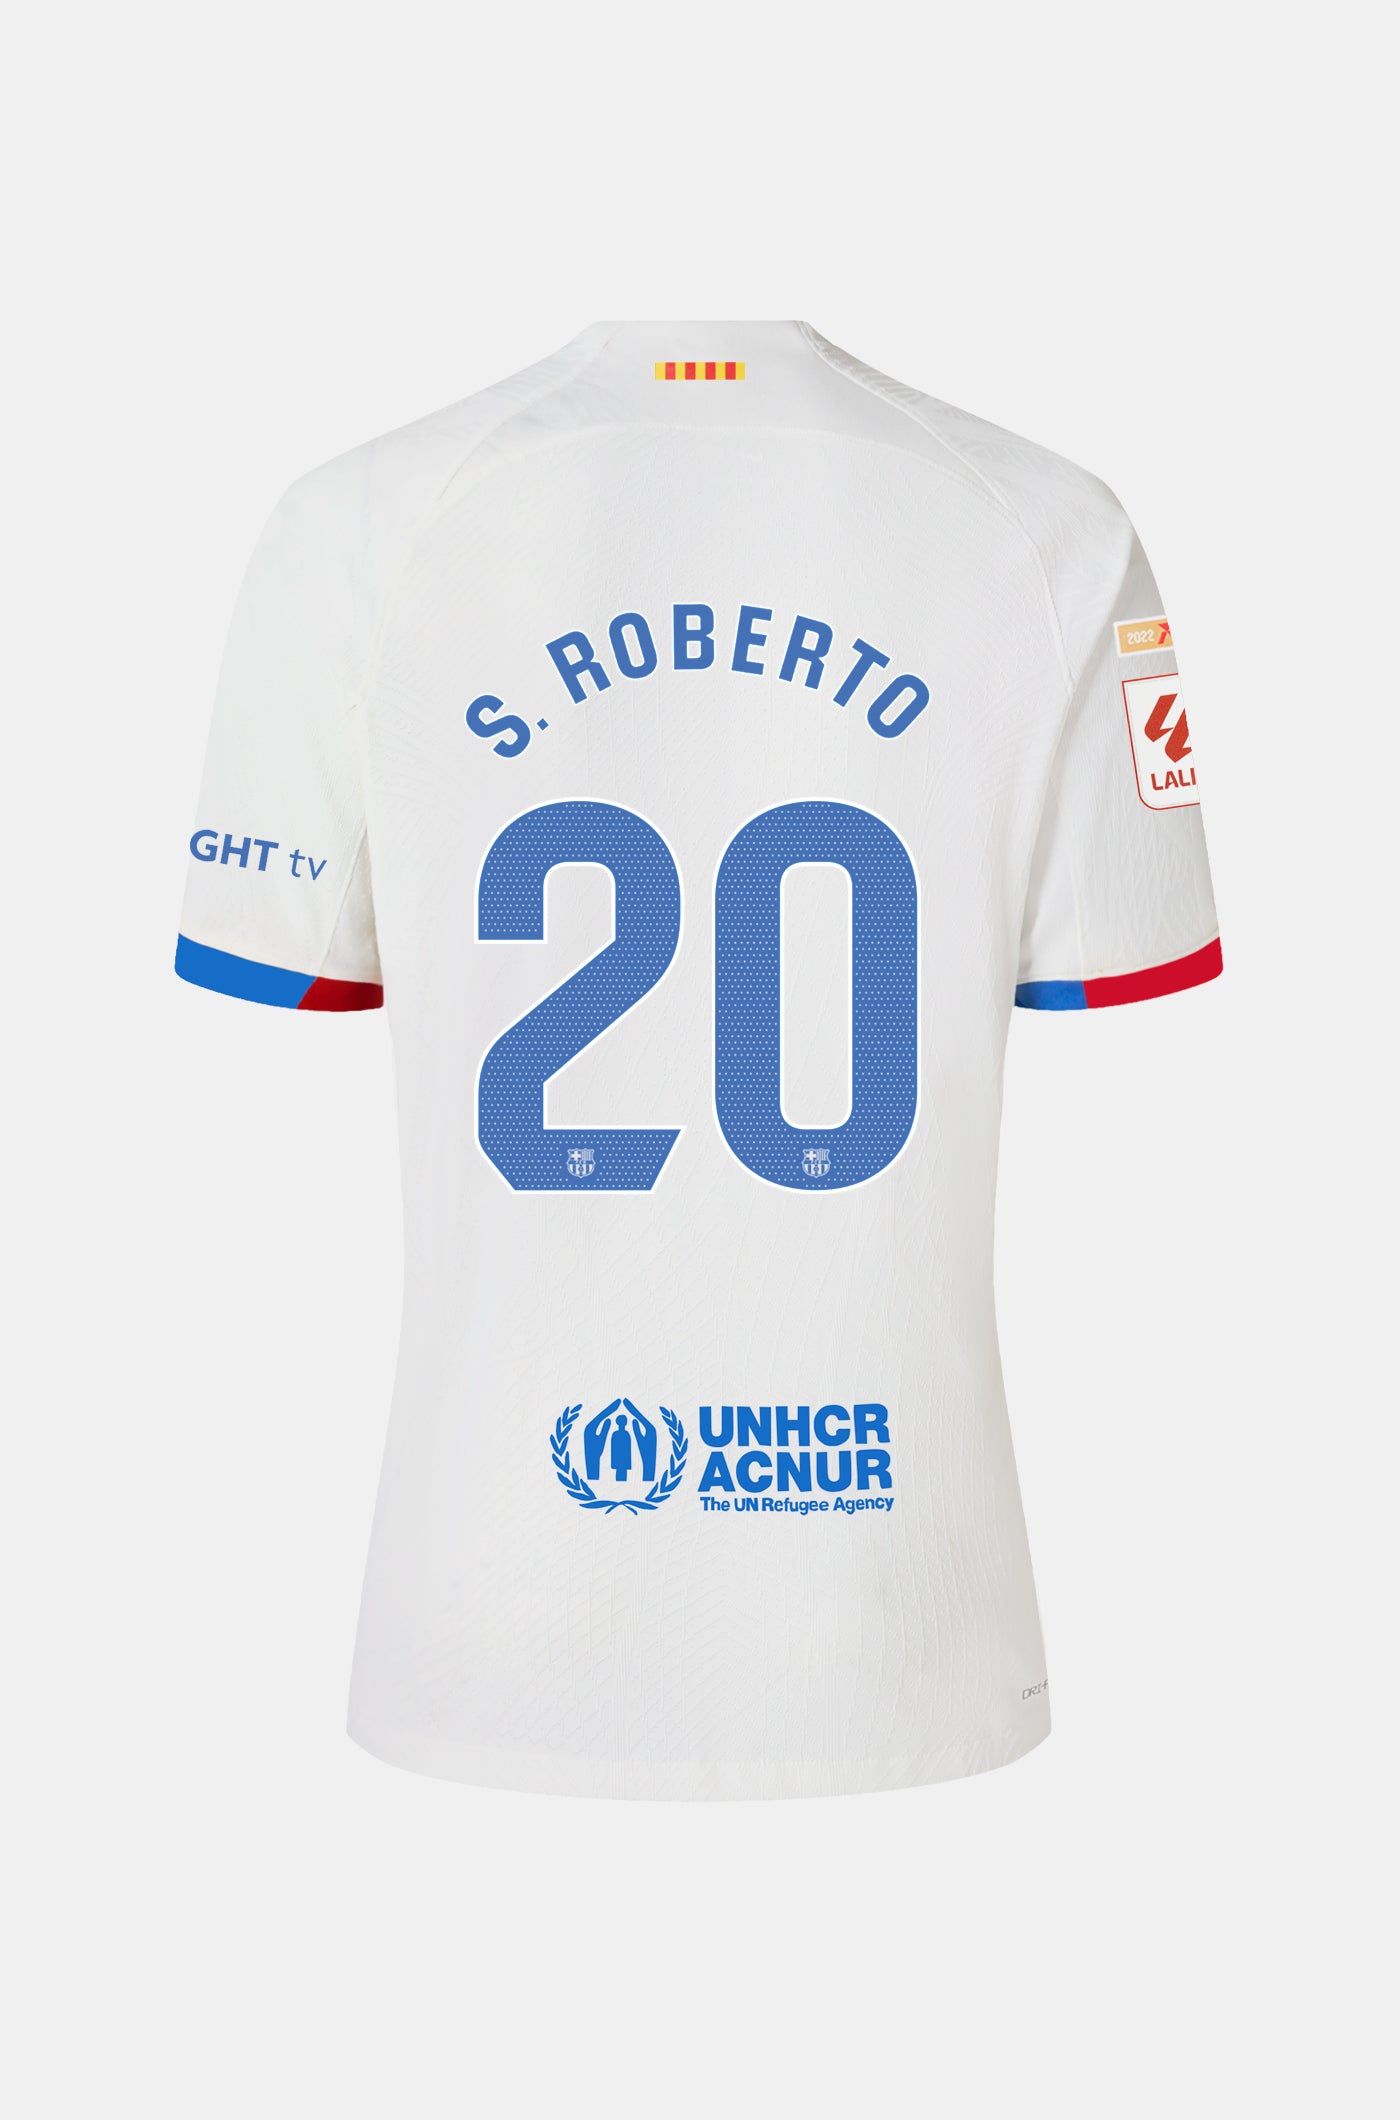 LFP FC Barcelona away shirt 23/24 Player’s Edition  - S. ROBERTO